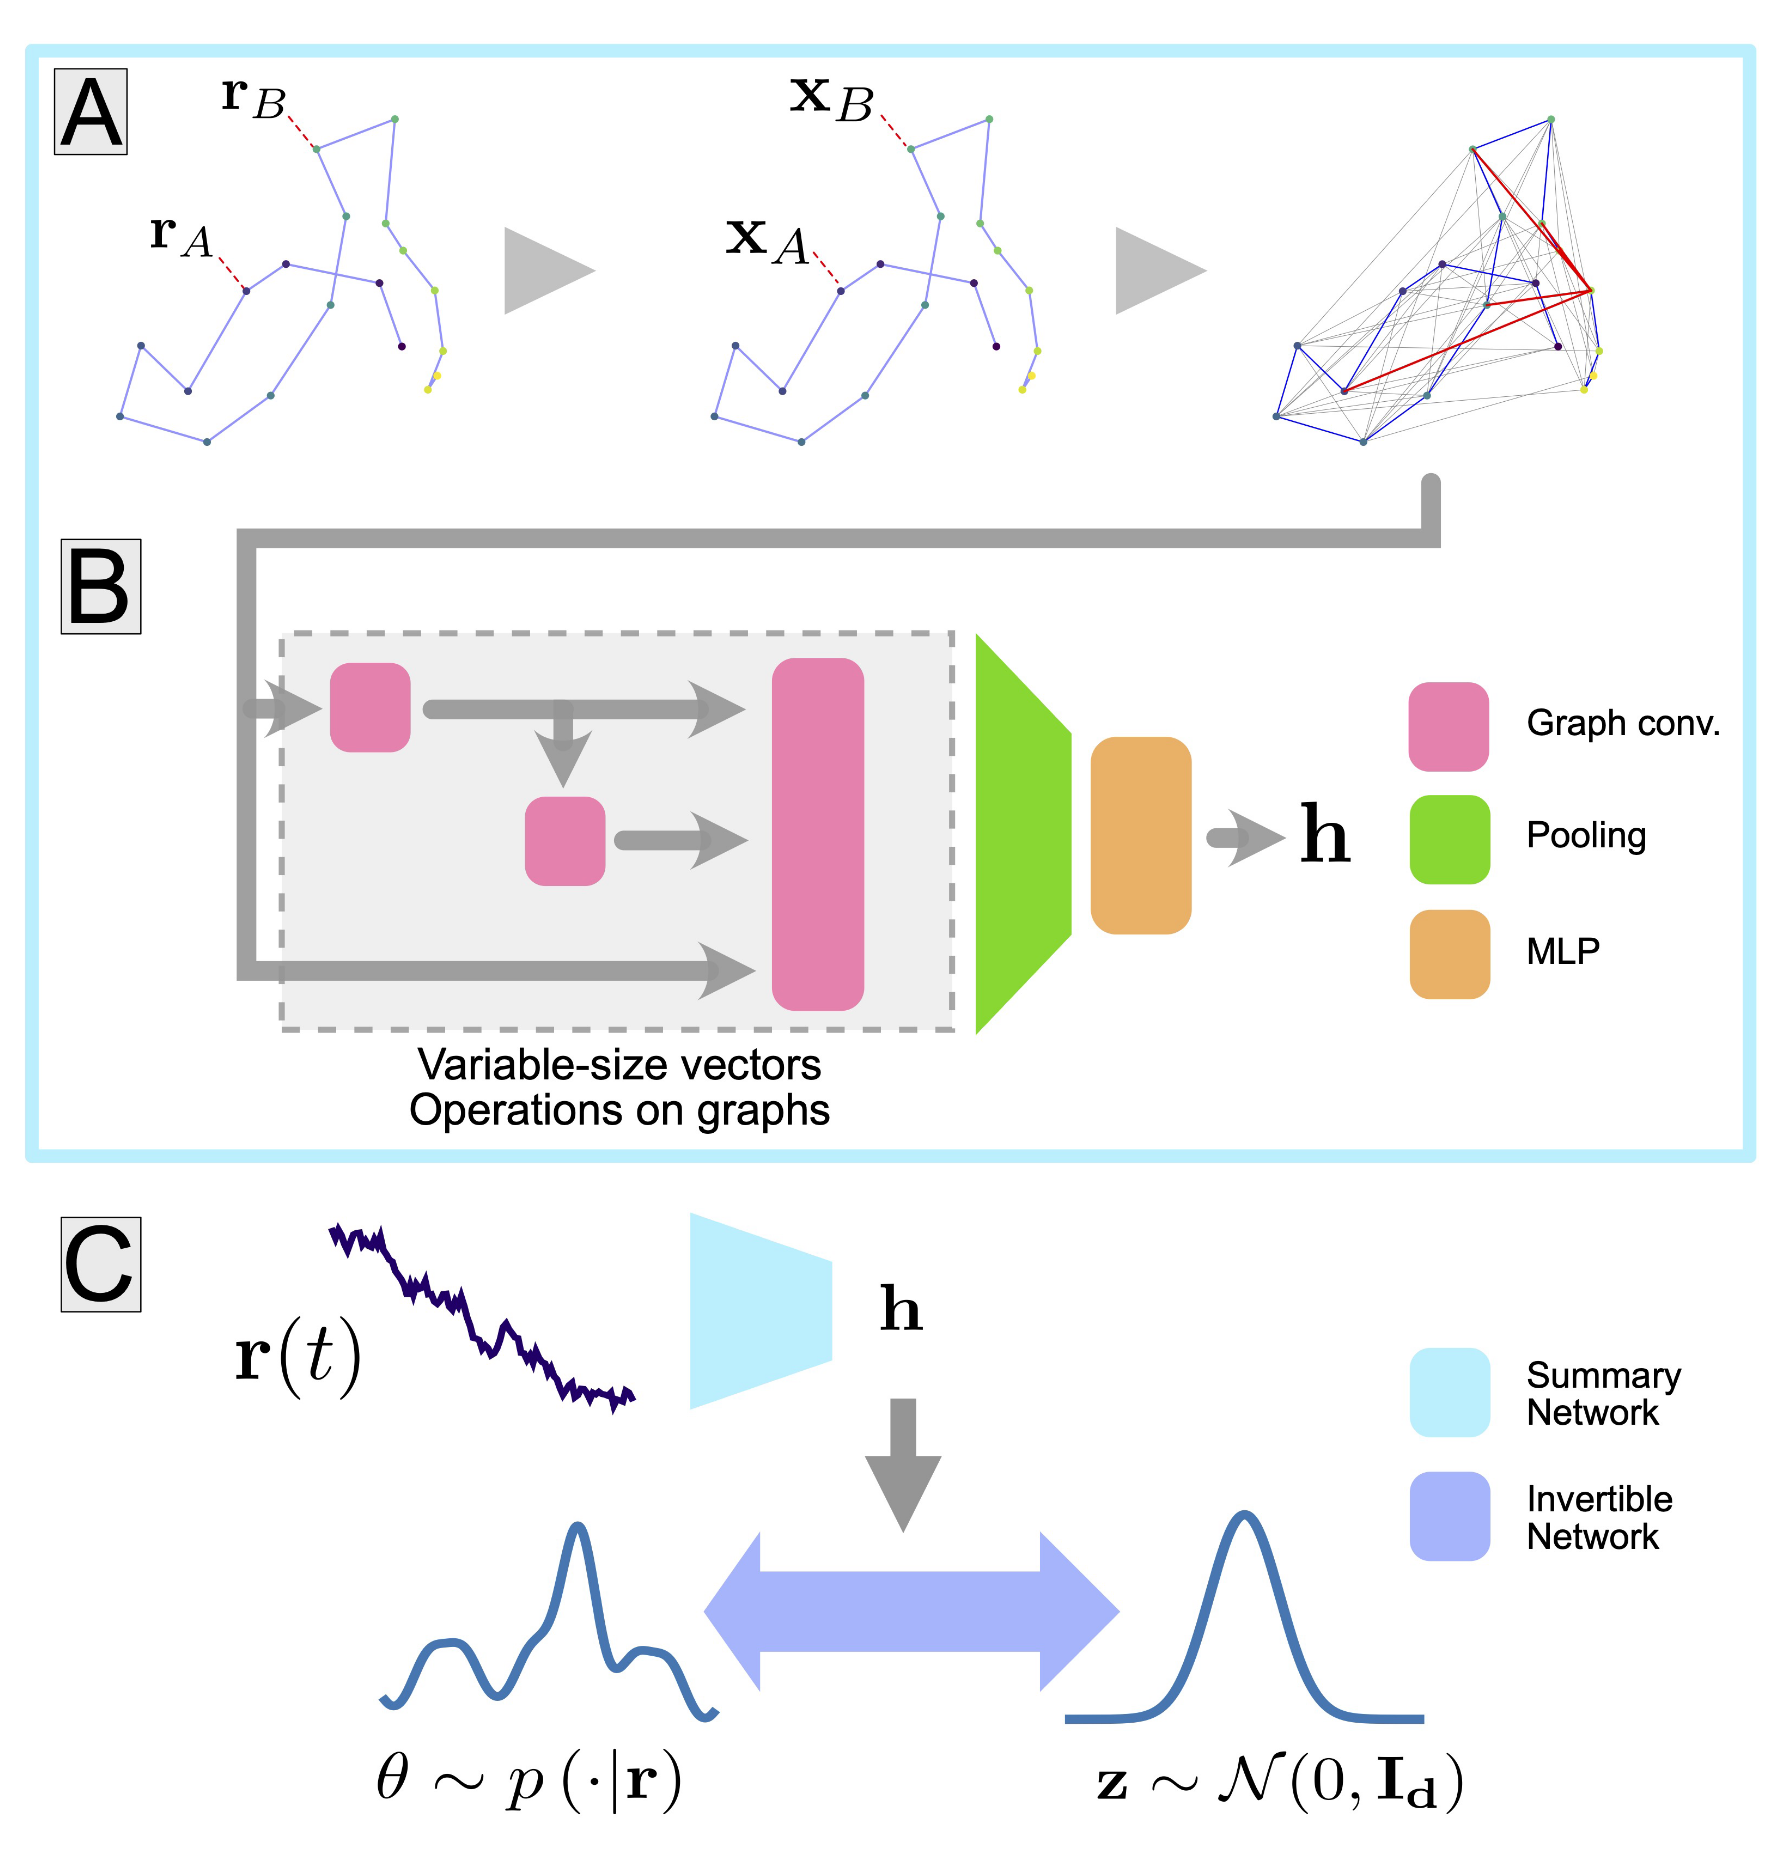 Architecture de la procédure d’inférence amortie des propriétés physiques de maches aléatoires de biomolécules à partir d’une approche de réseau de neurones sur graphes.